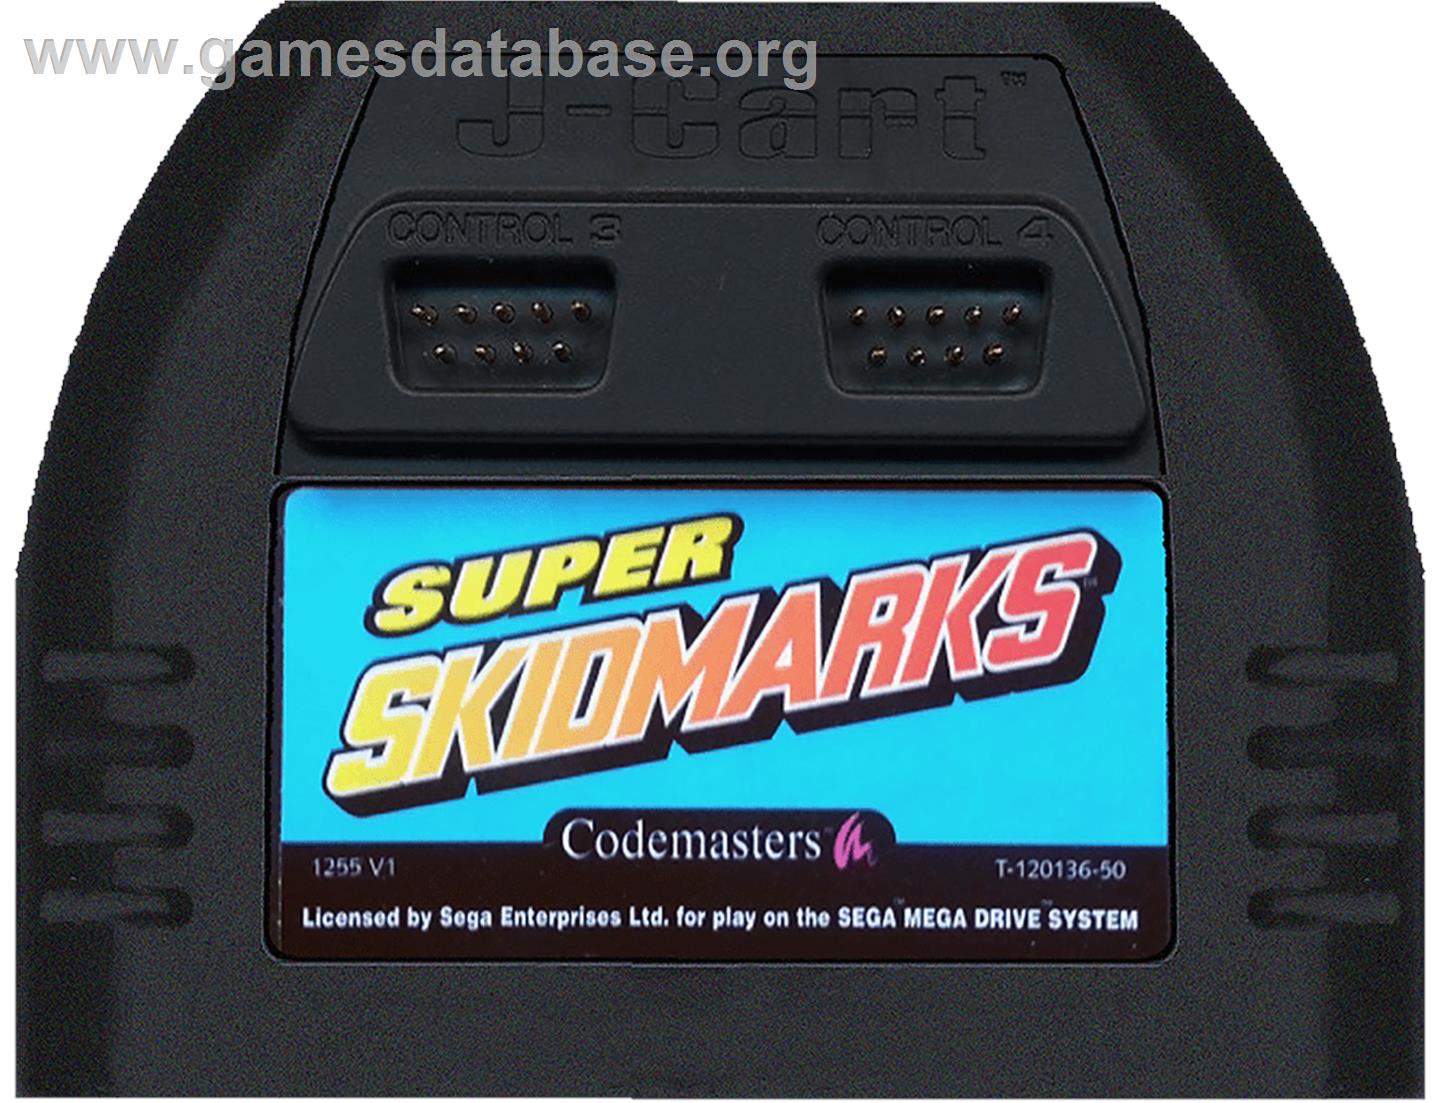 Super Skidmarks - Sega Genesis - Artwork - Cartridge